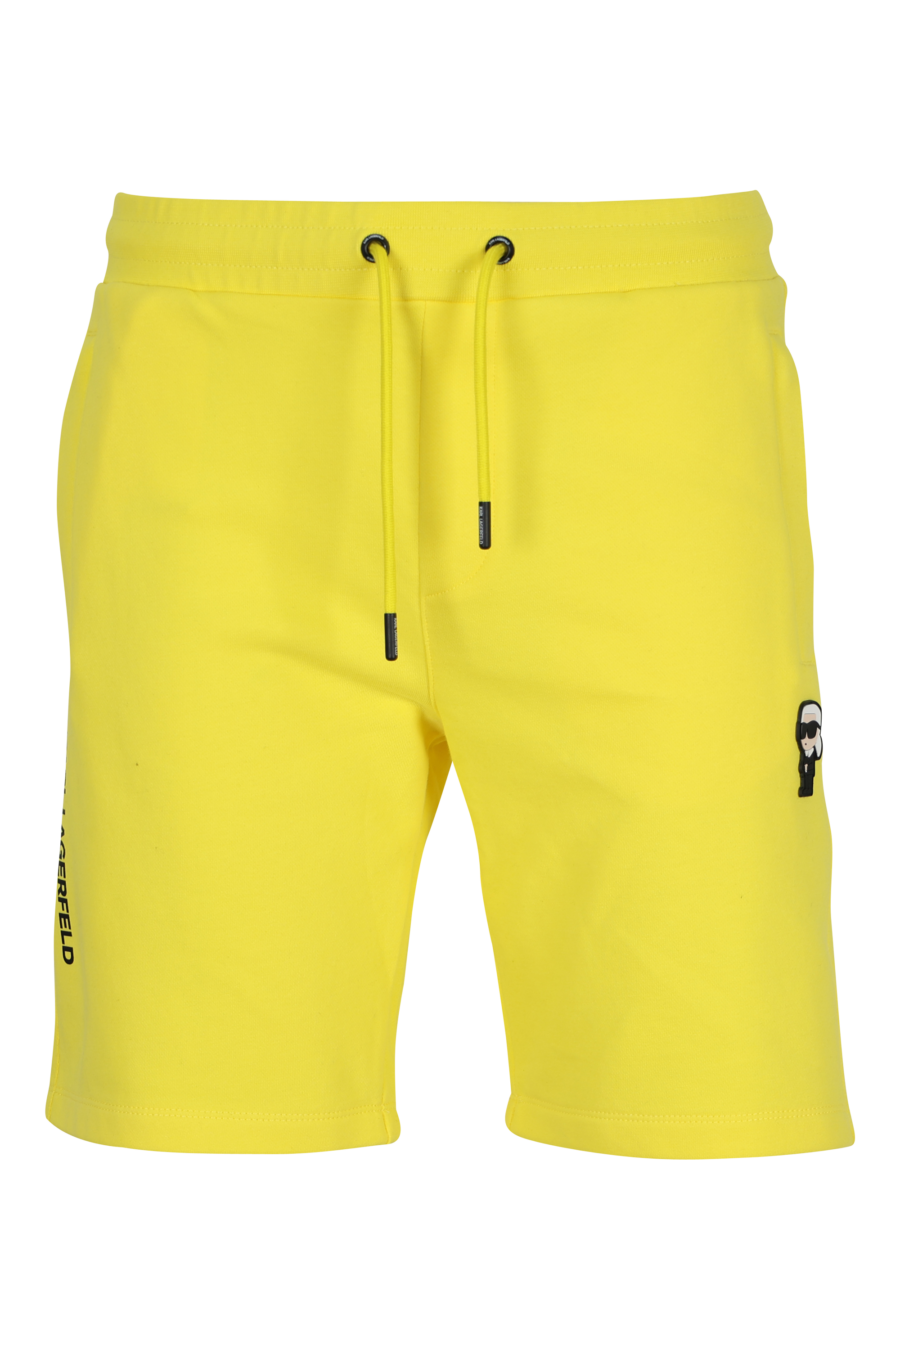 Pantalón de chándal amarillo midi con minilogo "karl" en goma - 4062226932868